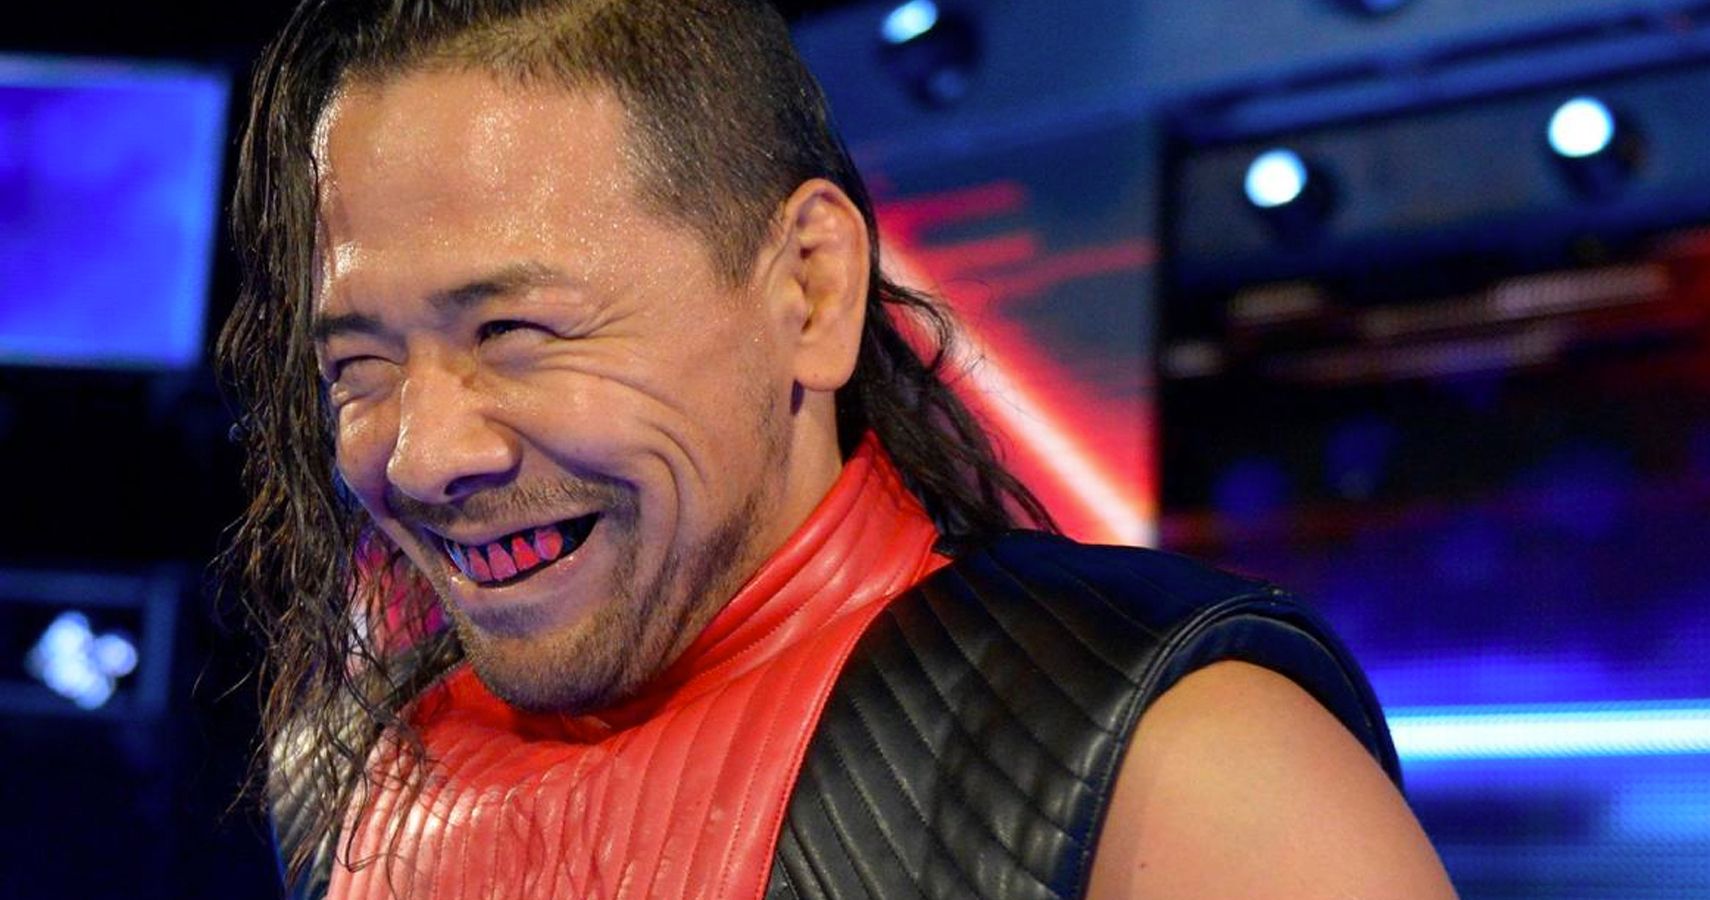 Shinsuke-Nakamura-After-SmackDown-Live-Attack.jpg